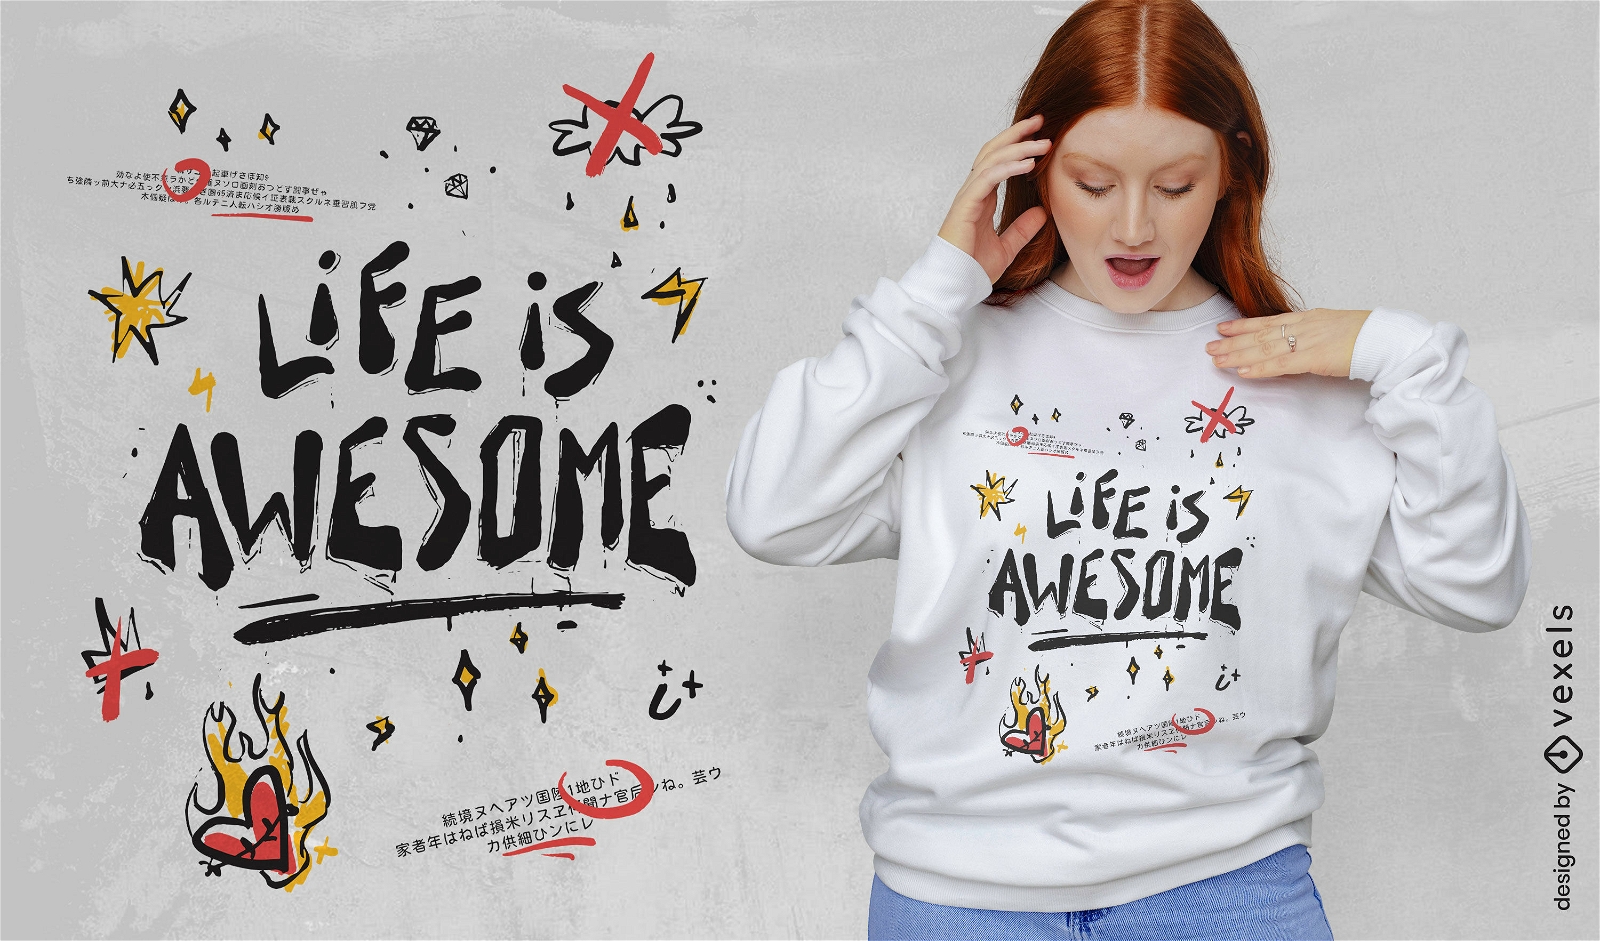 Das Leben ist ein fantastisches Doodle-Zitat-T-Shirt-Design